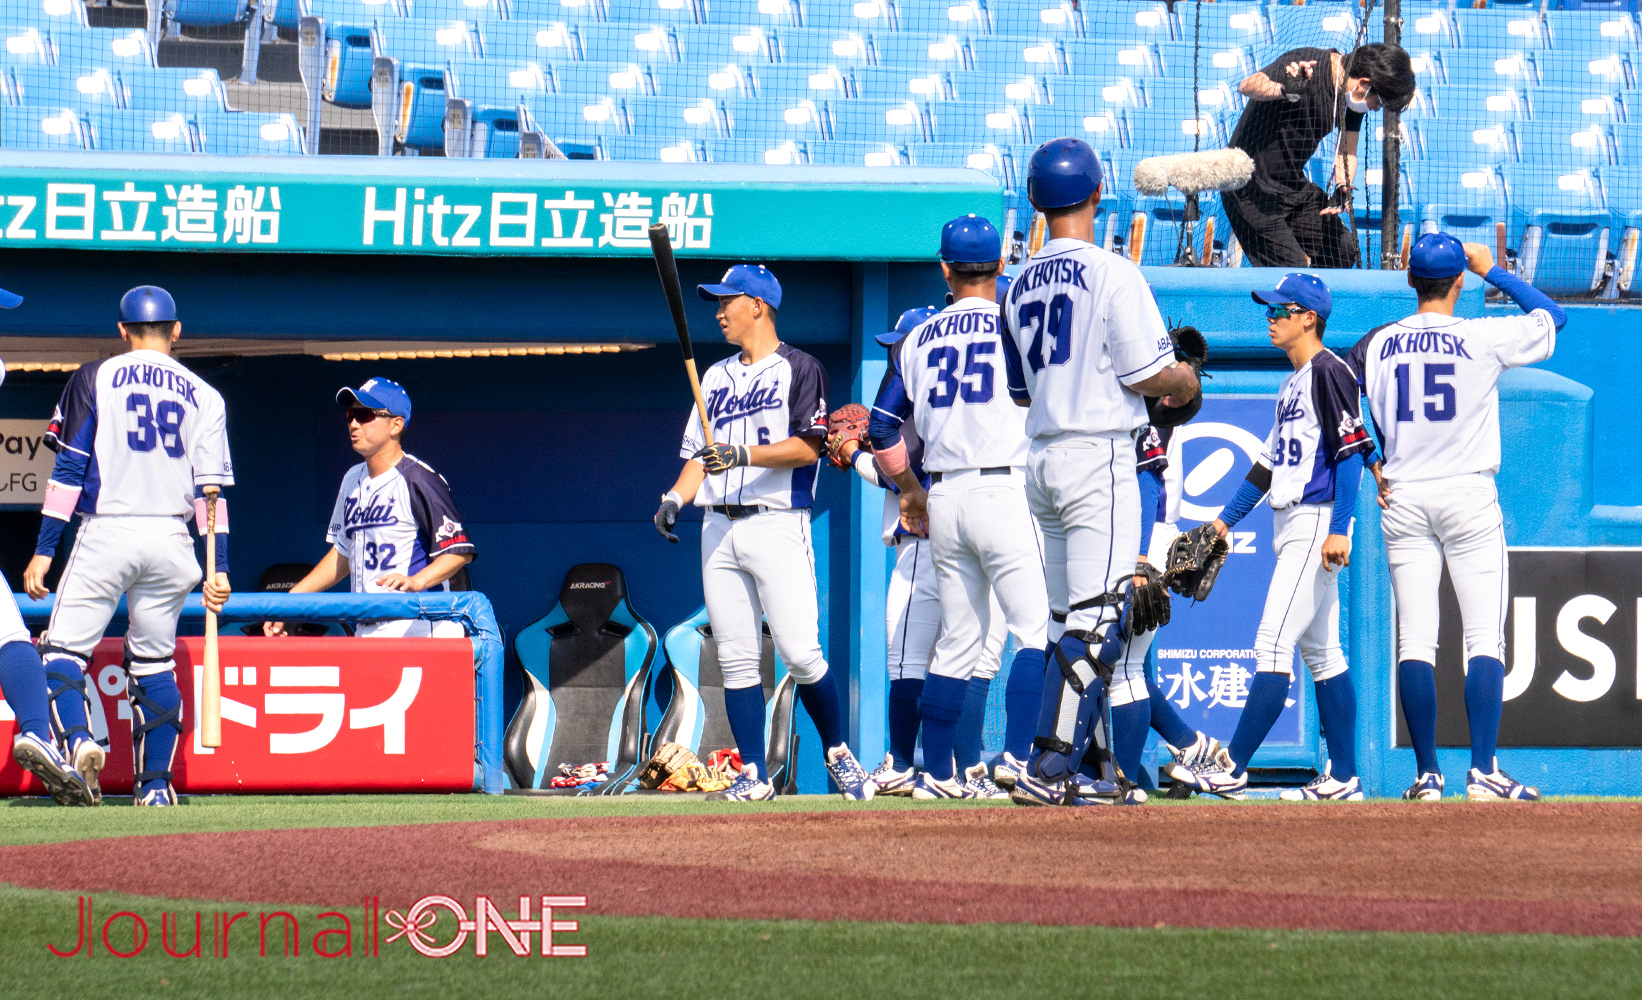 Journal-ONE | 第73回全日本大学野球選手権で最北・北海道網走市から出場した東京農業大学北海道オホーツクの選手たち